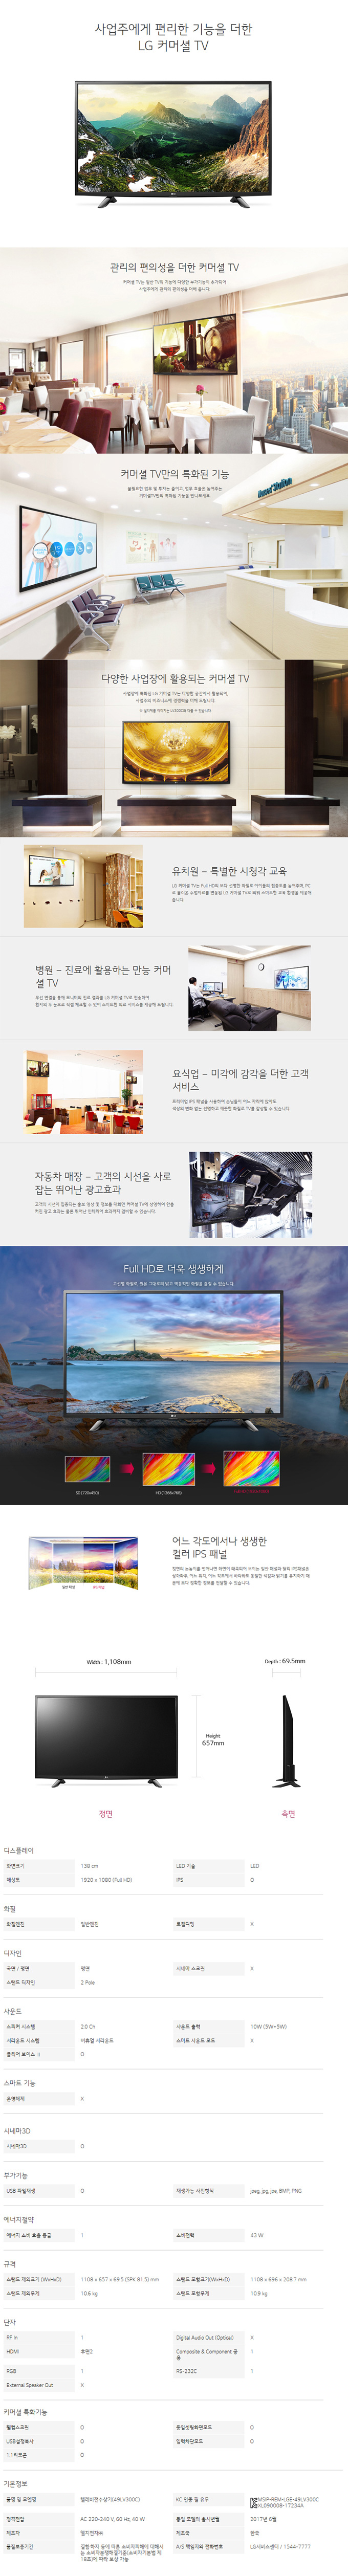 북부케이블 - LG 49인치 LED TV (49LV300C) 상세보기